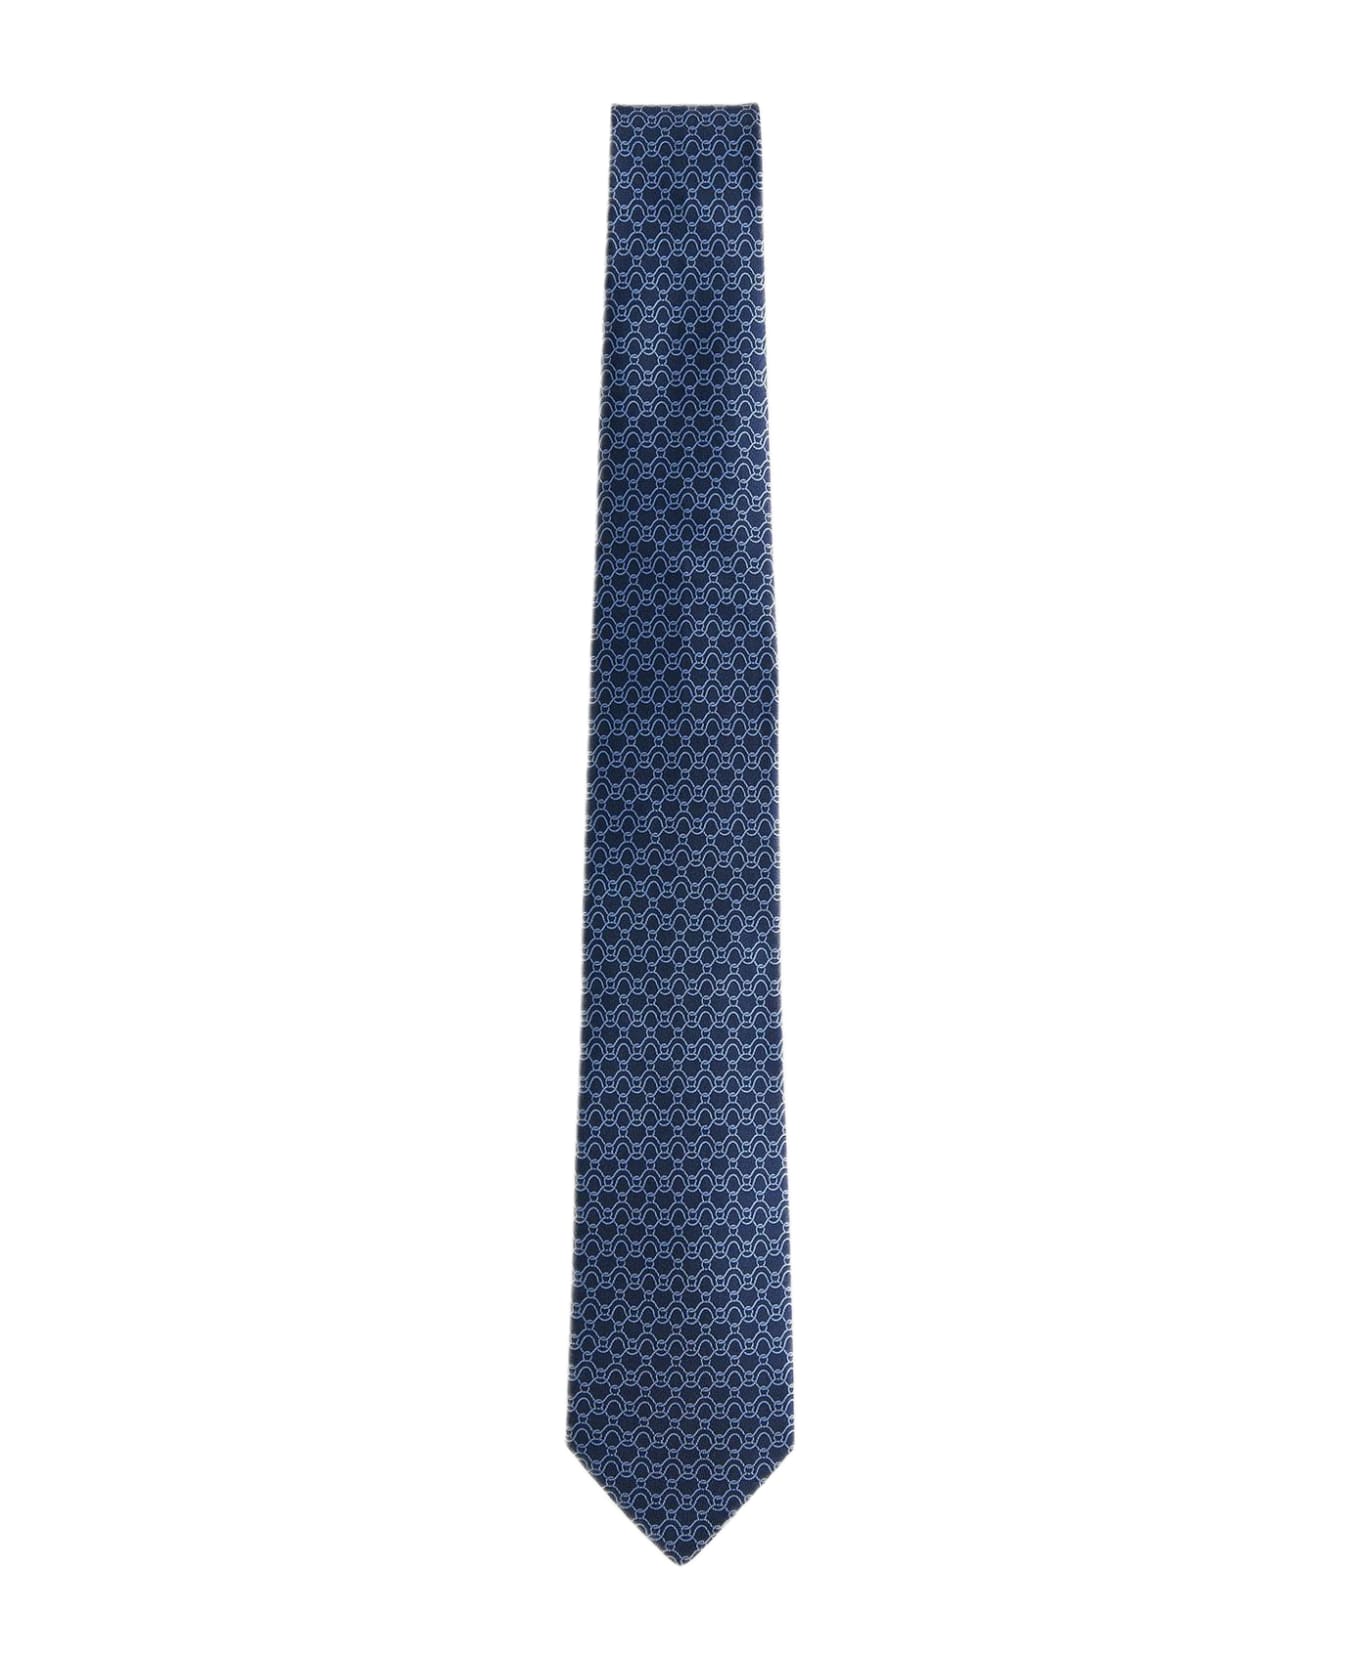 Ferragamo Traccia Silk Tie - F.navy/azzurro ネクタイ